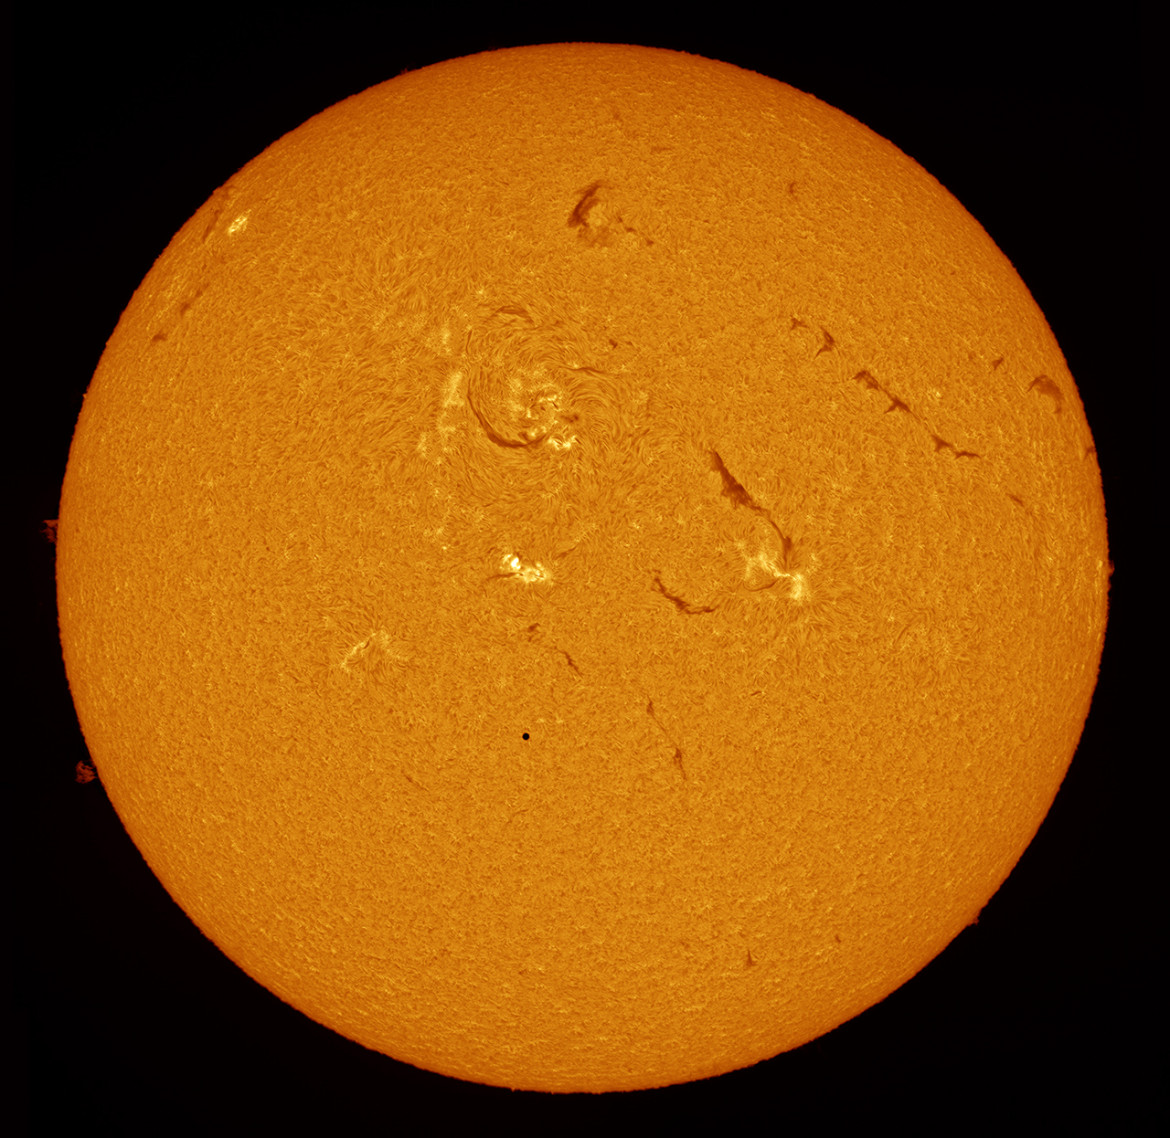 Alexandra Hart - I miejsce w kategorii "Our Sun", zdjęcie przedstawia przejście planety Merkury na tle Słońca